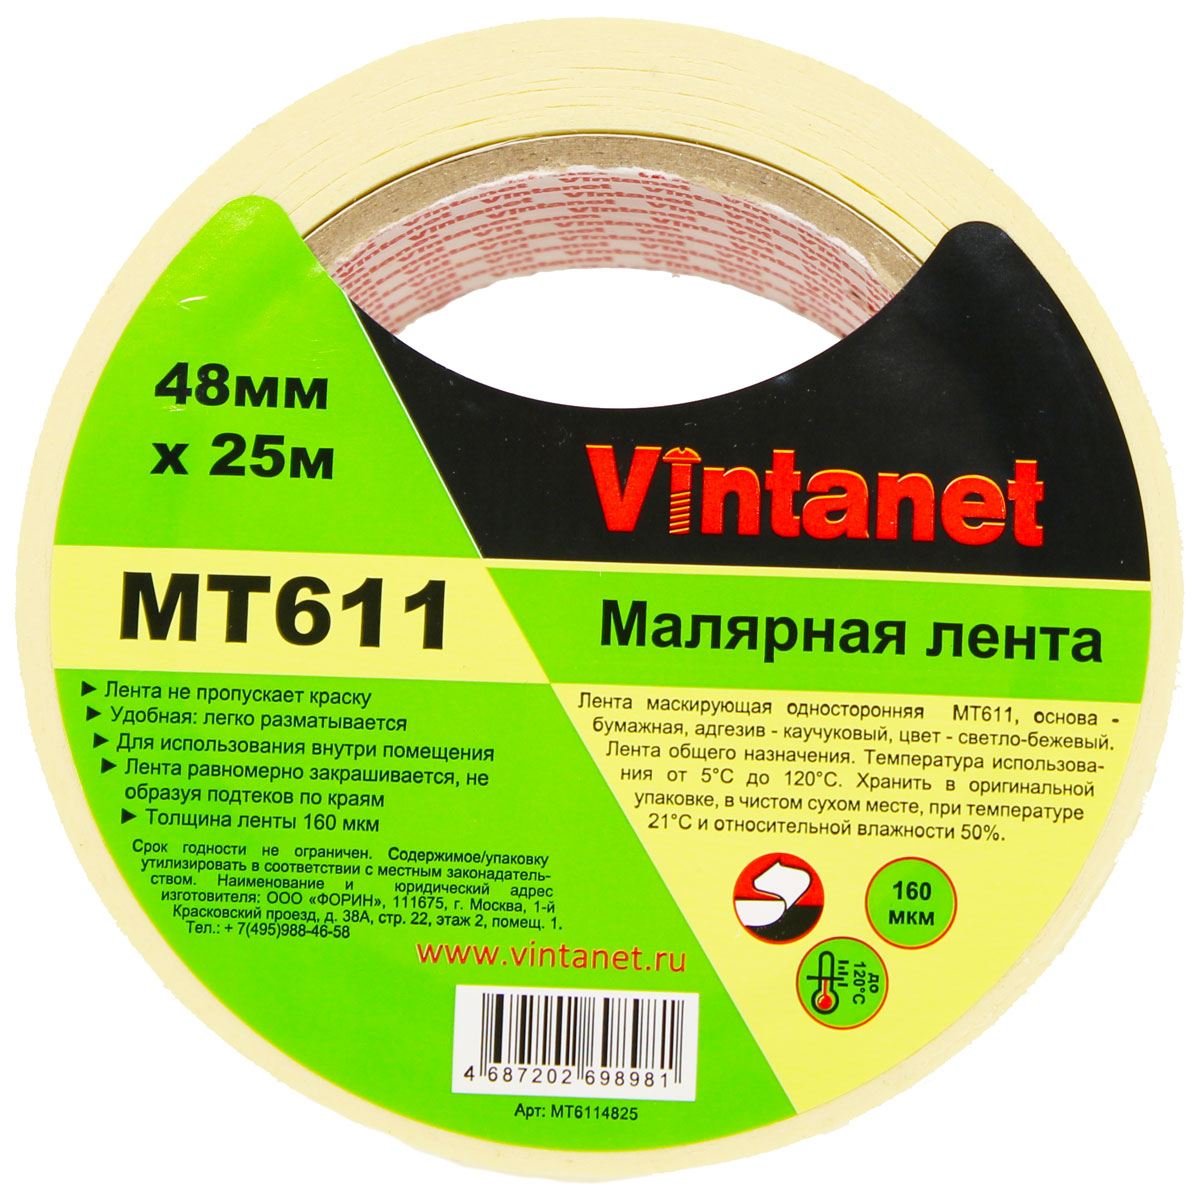 Лента малярная высокотемпературная Vintanet MT611, 120 С, 160 мкм, 48мм х 25м, MT6114825 малярная лента для деликатных поверхностей rollingdog